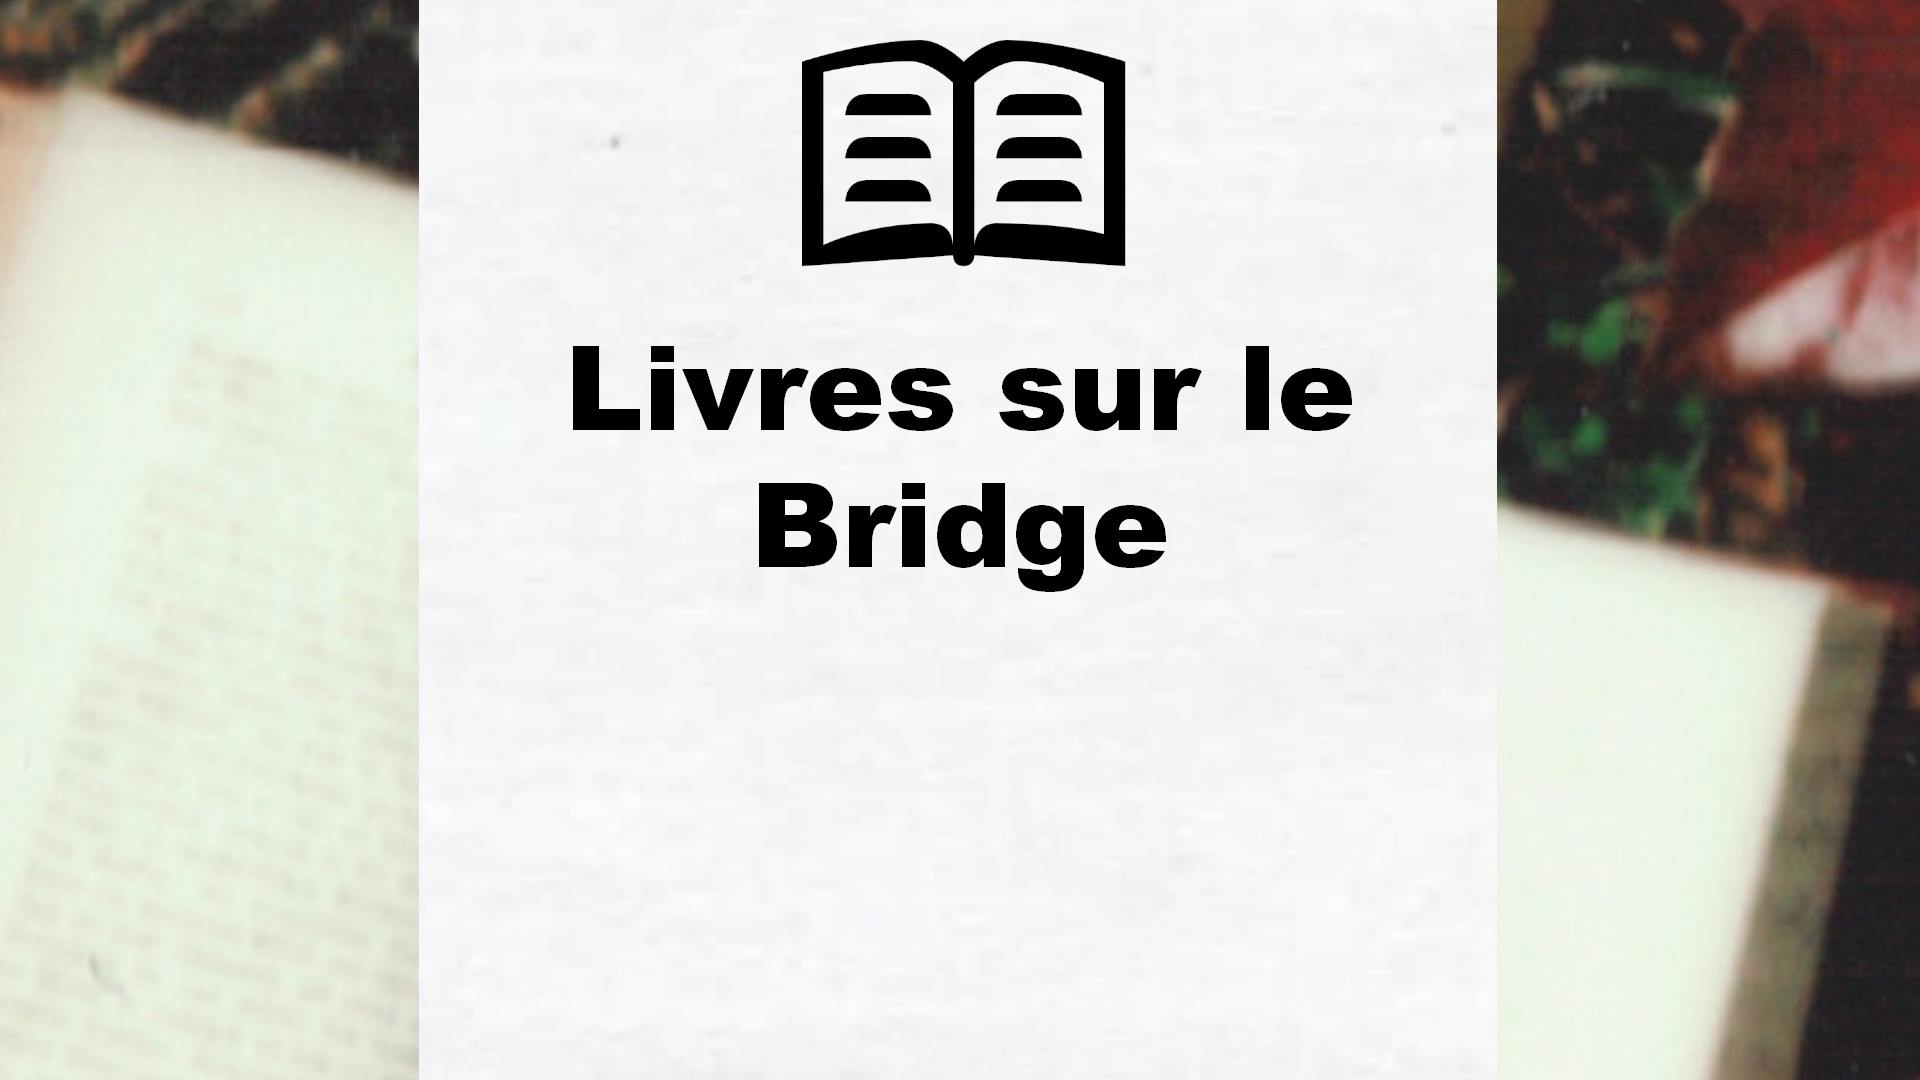 Livres sur le Bridge